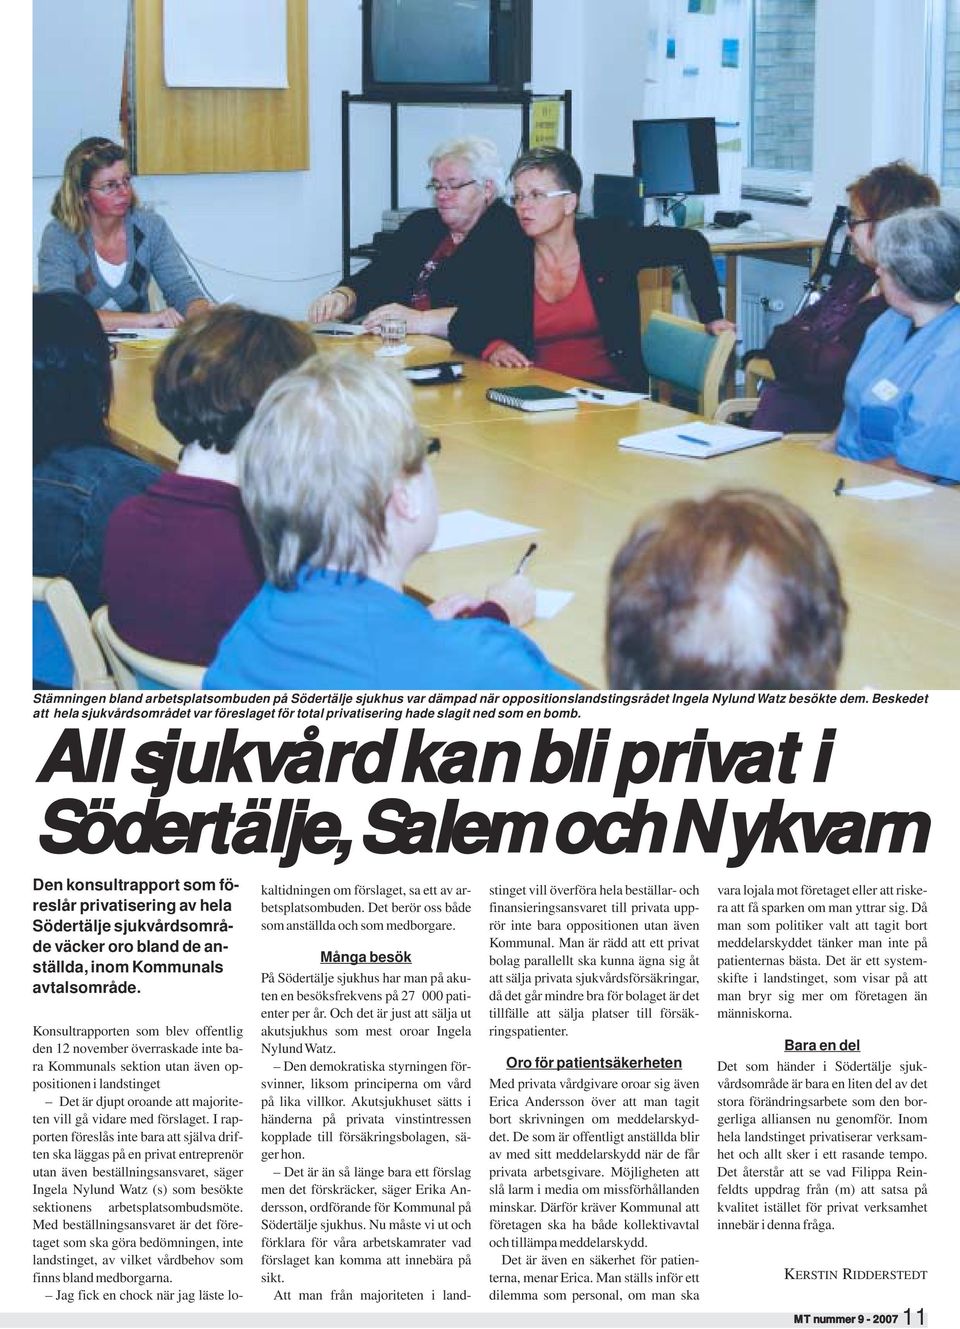 All sjukvård kan bli privat i Södertälje, Salem och Nykvarn Den konsultrapport som föreslår privatisering av hela Södertälje sjukvårdsområde väcker oro bland de anställda, inom Kommunals avtalsområde.